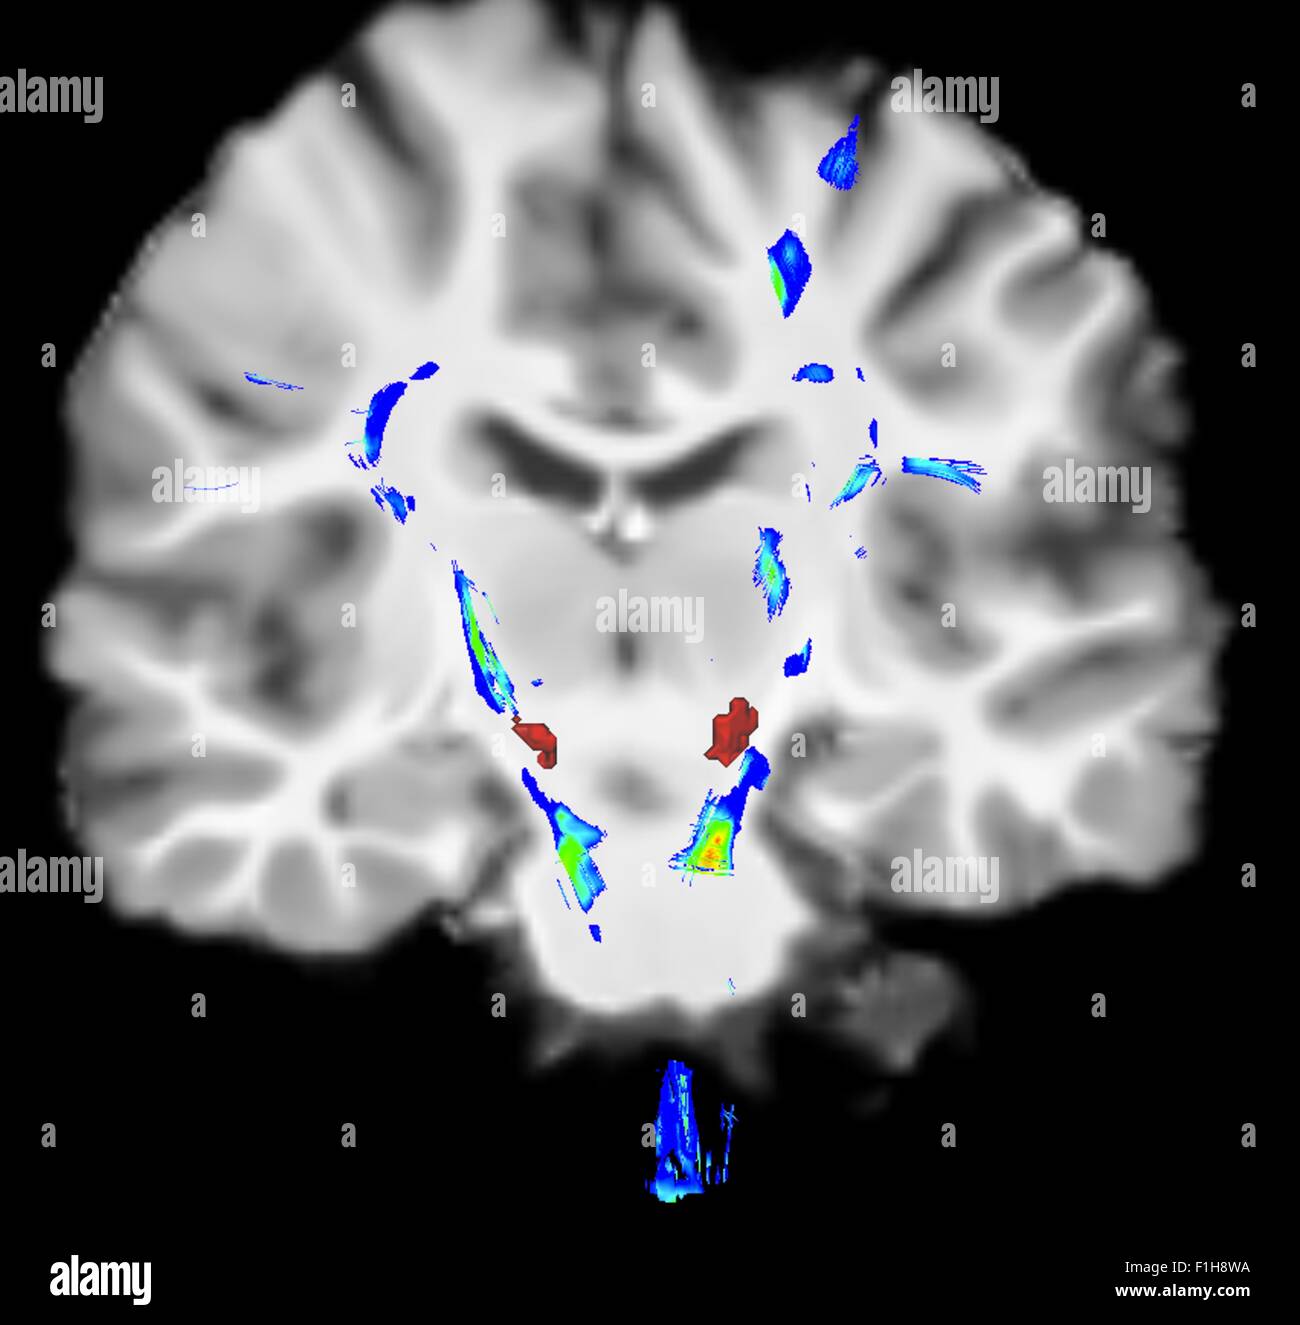 Vue coronale du cerveau humain de la maladie de Parkinson. Mettre en évidence les zones bleu/vert de l'appareil moteur fibres zone rouge est substancia nigra Banque D'Images